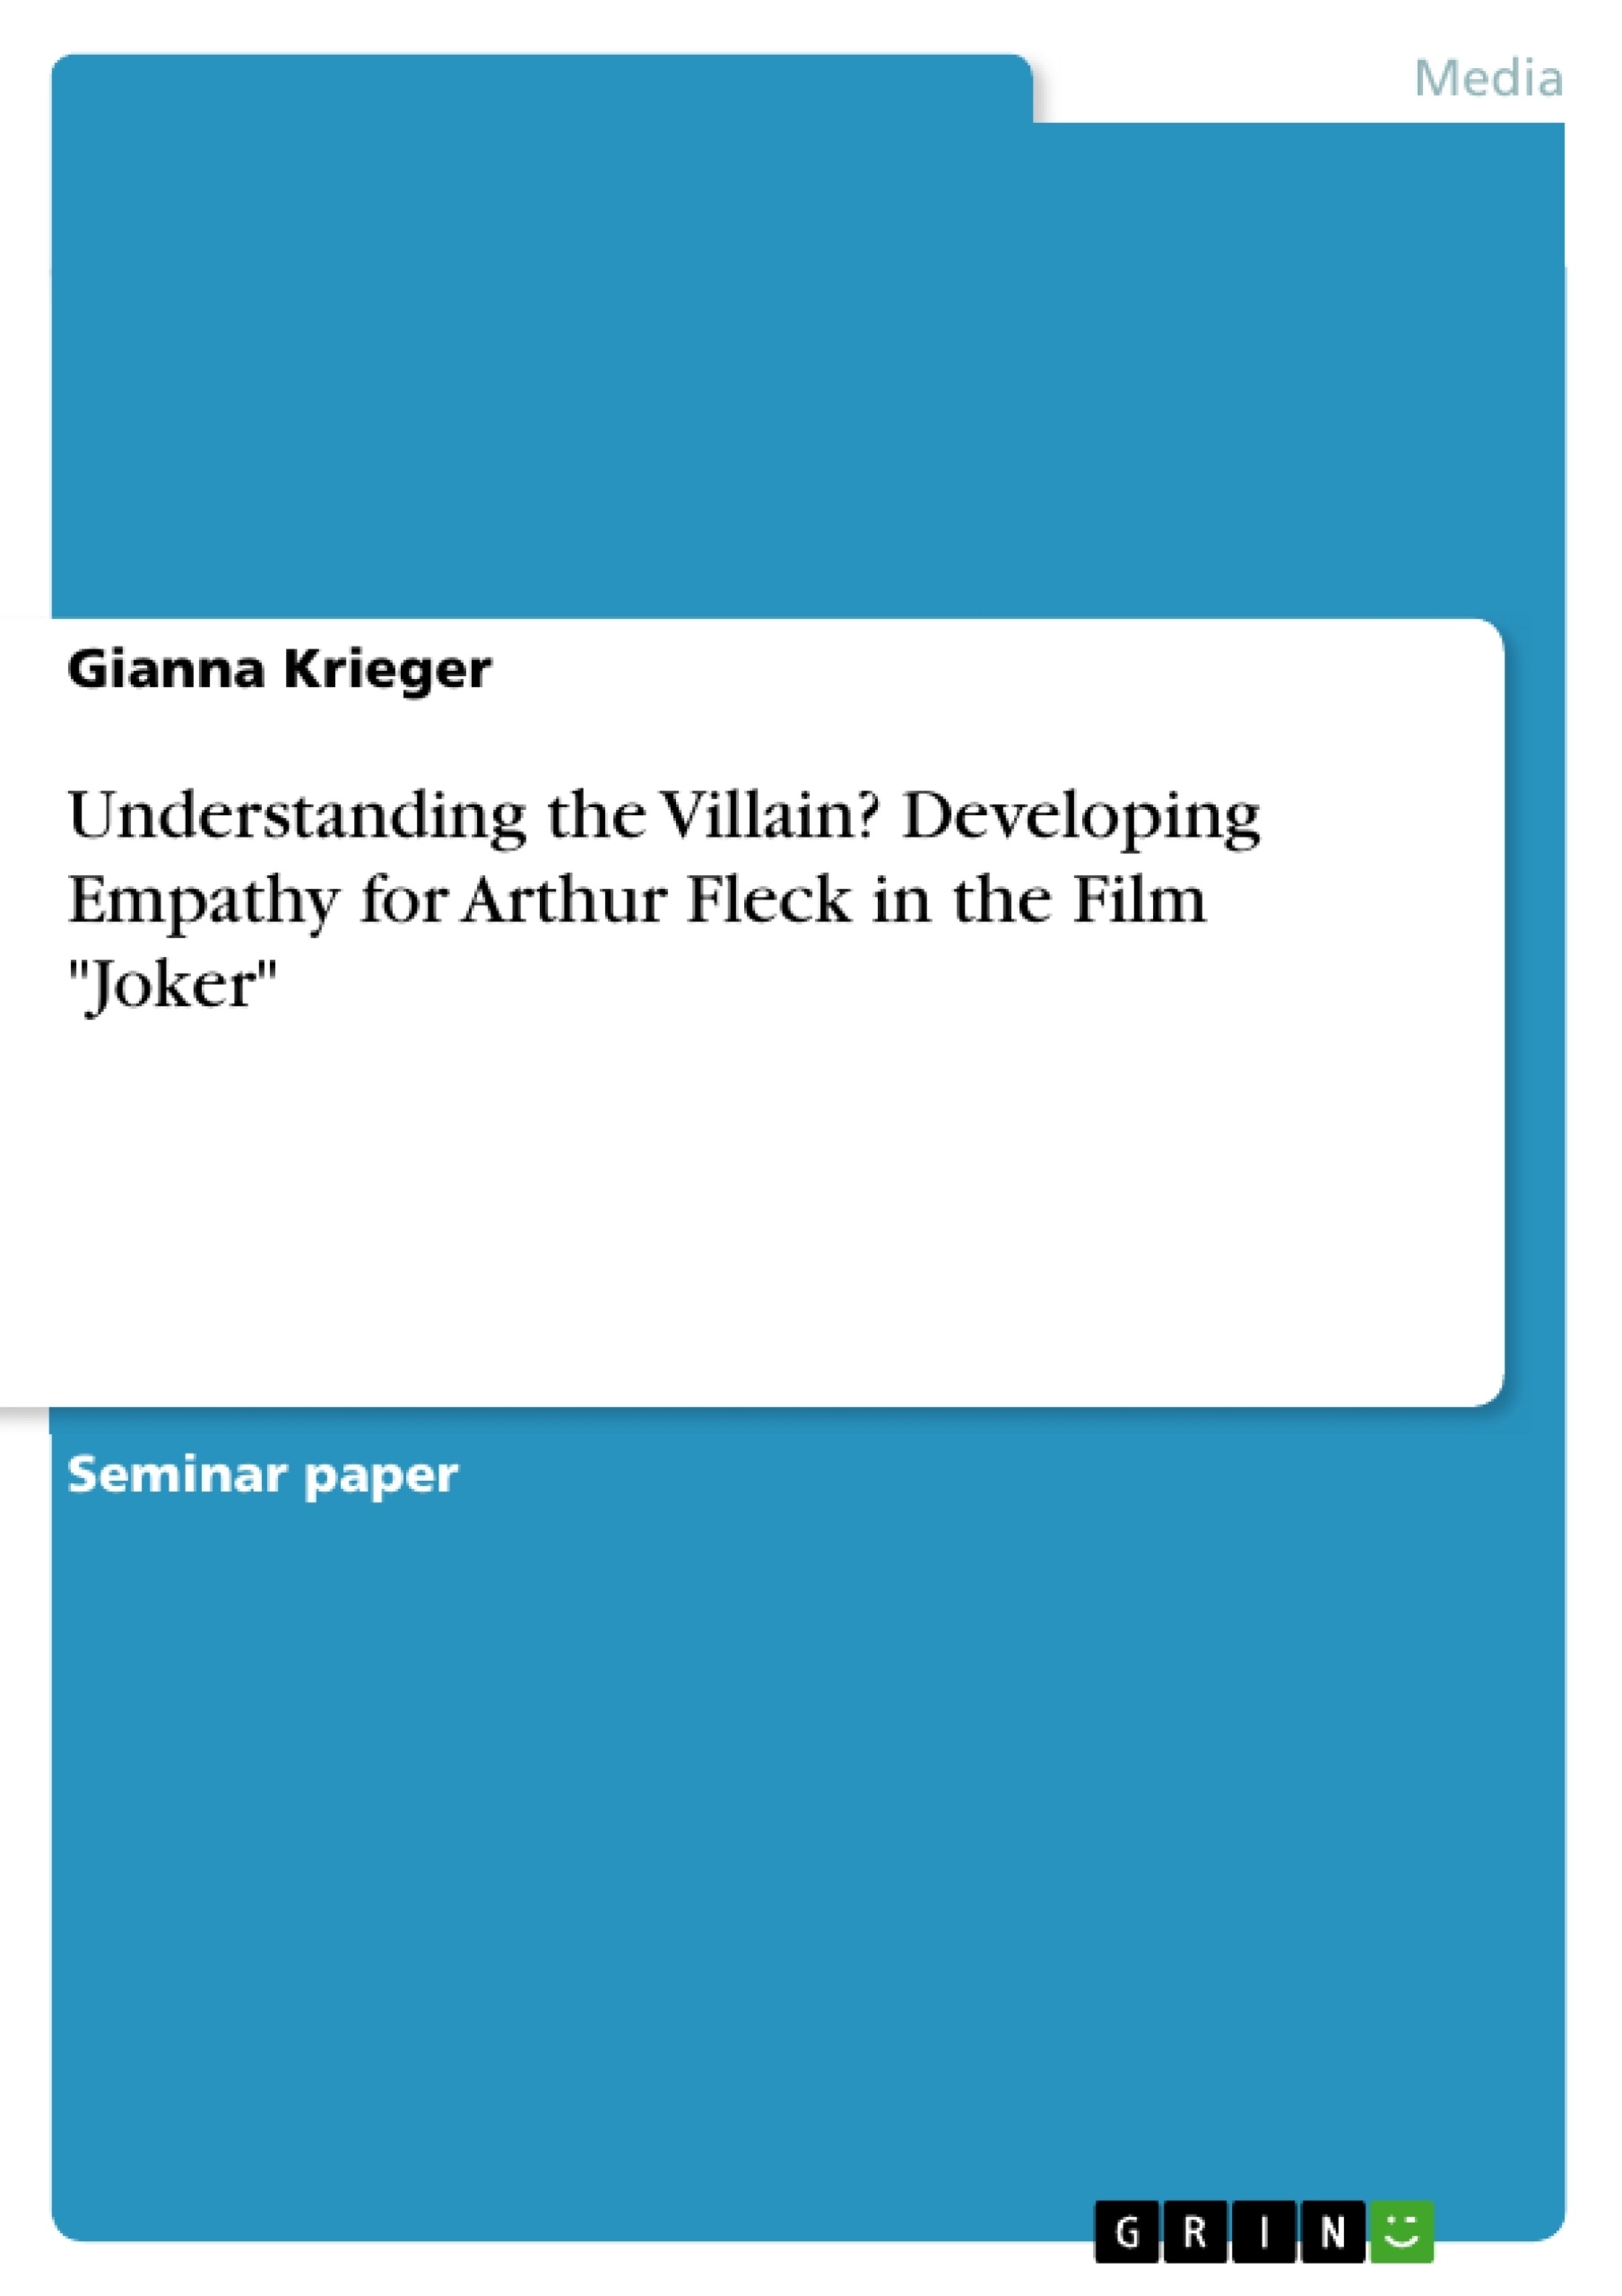 Title: Understanding the Villain?  Developing Empathy for Arthur Fleck in the Film "Joker"